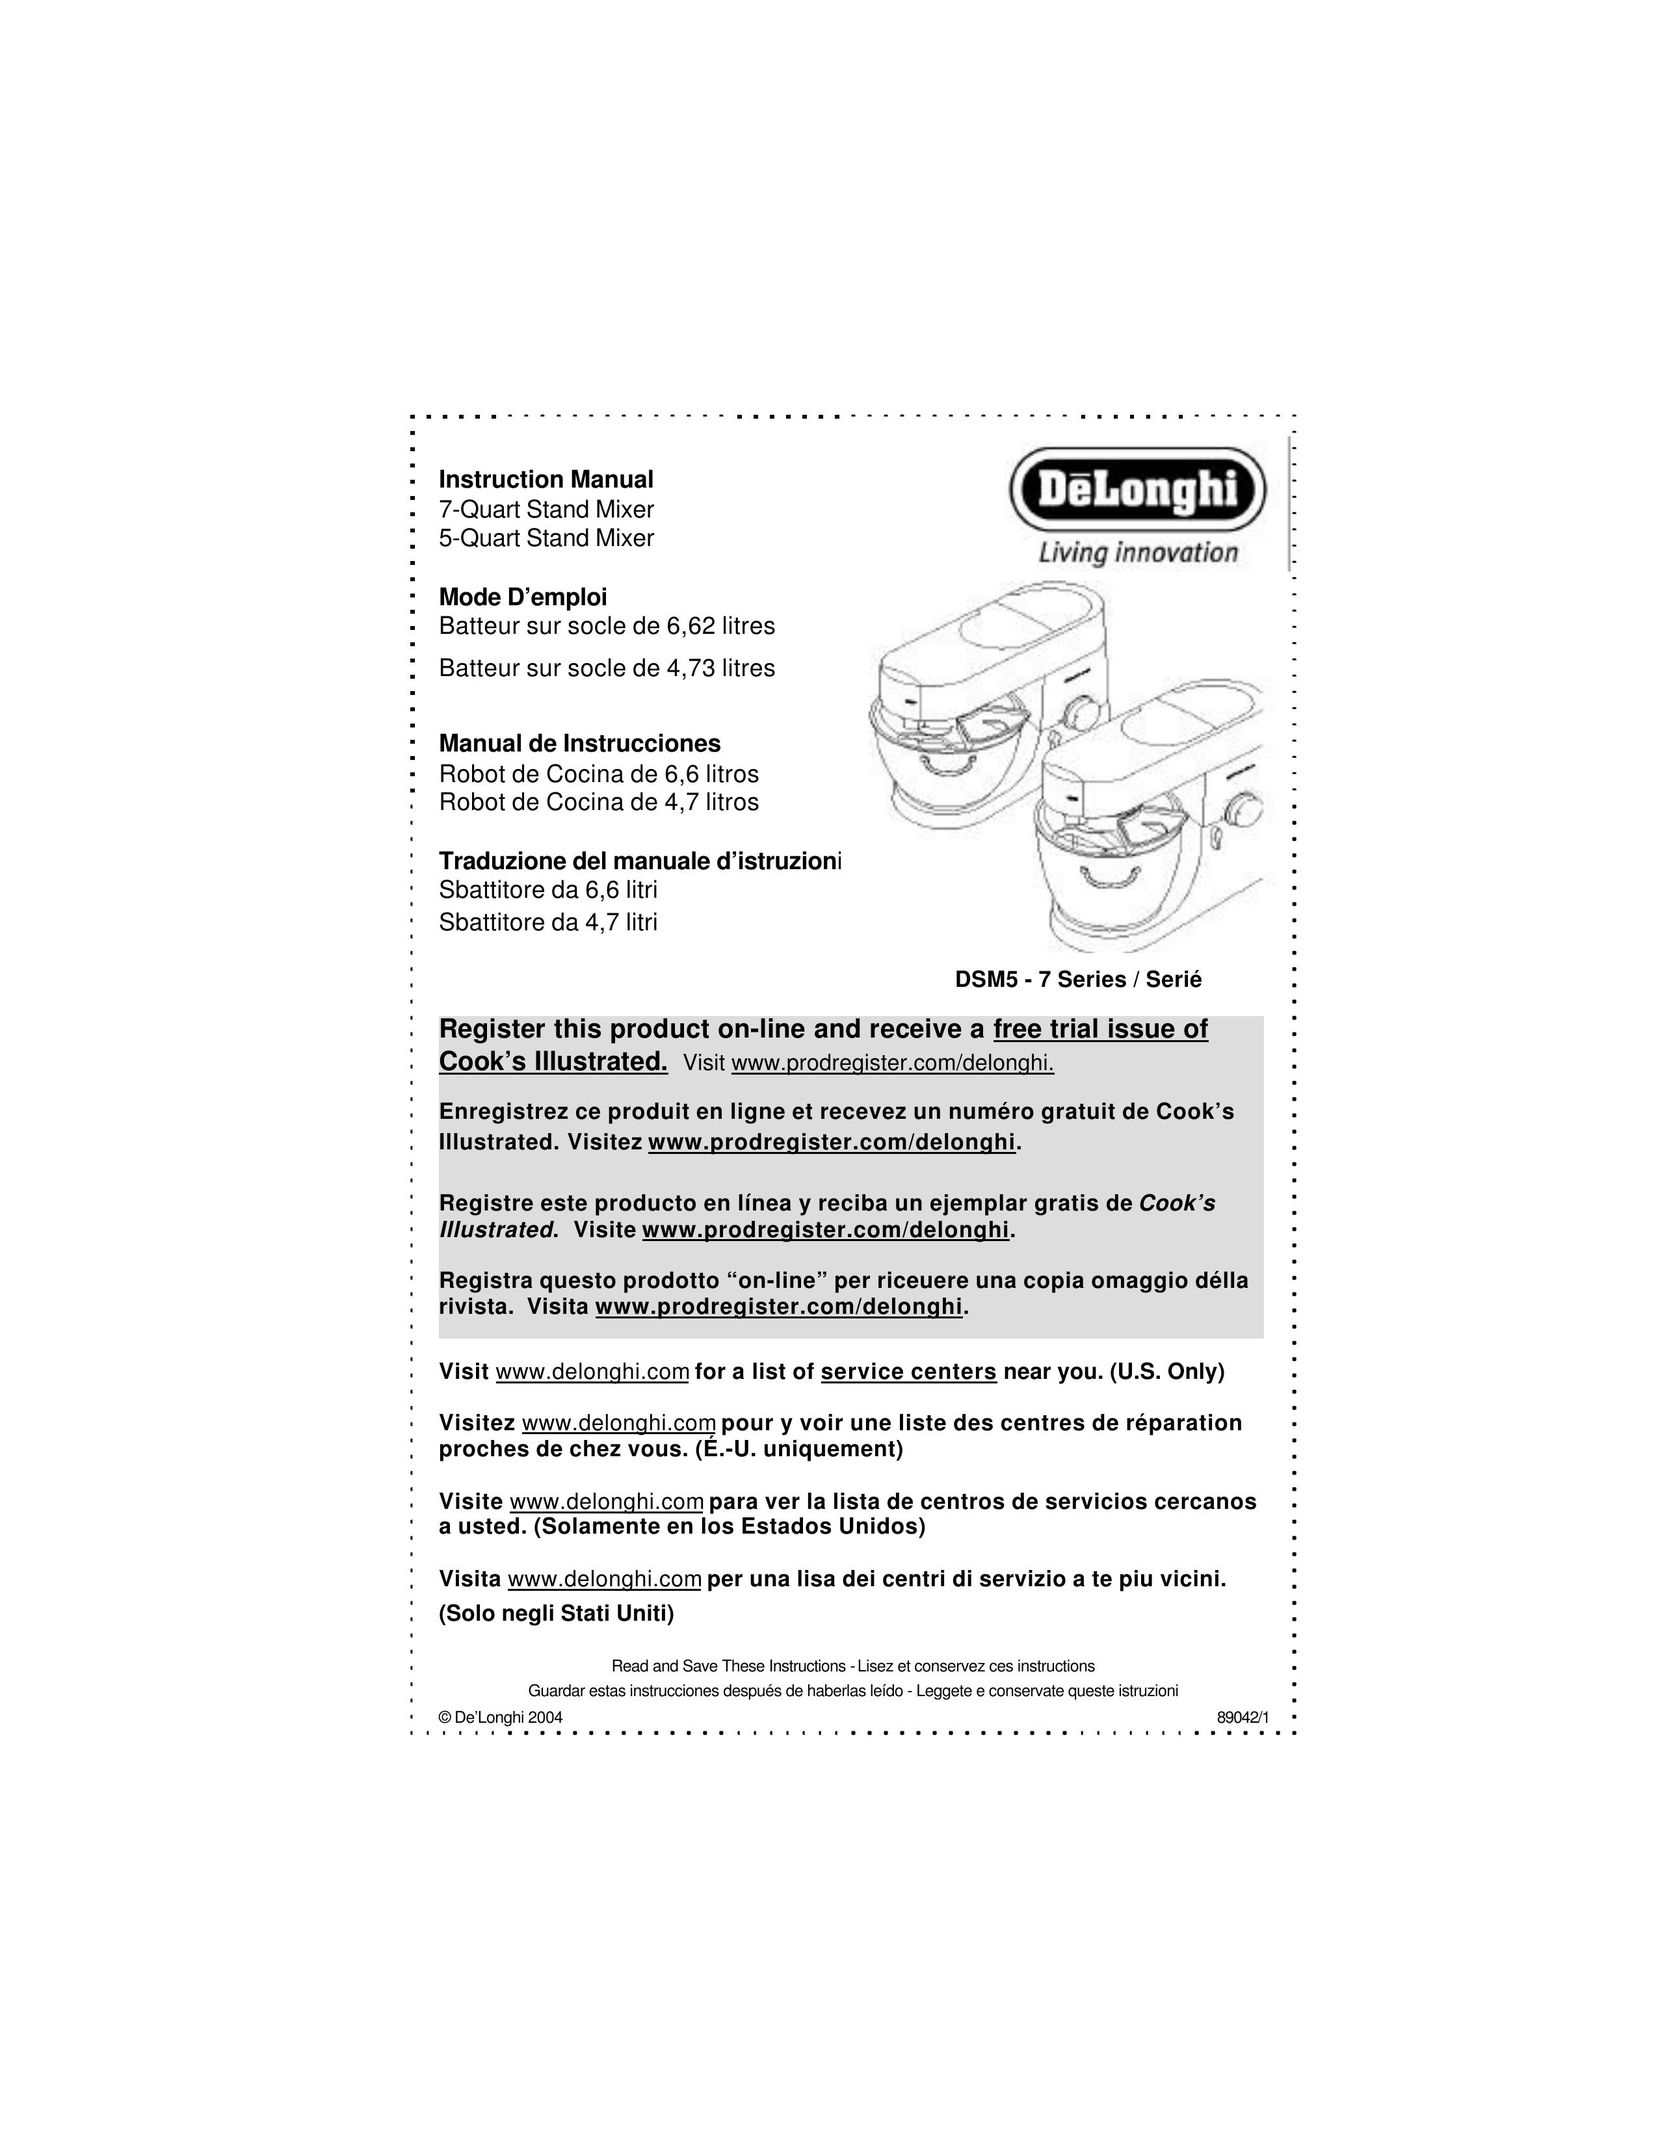 DeLonghi DSM5 - 7 Series Mixer User Manual